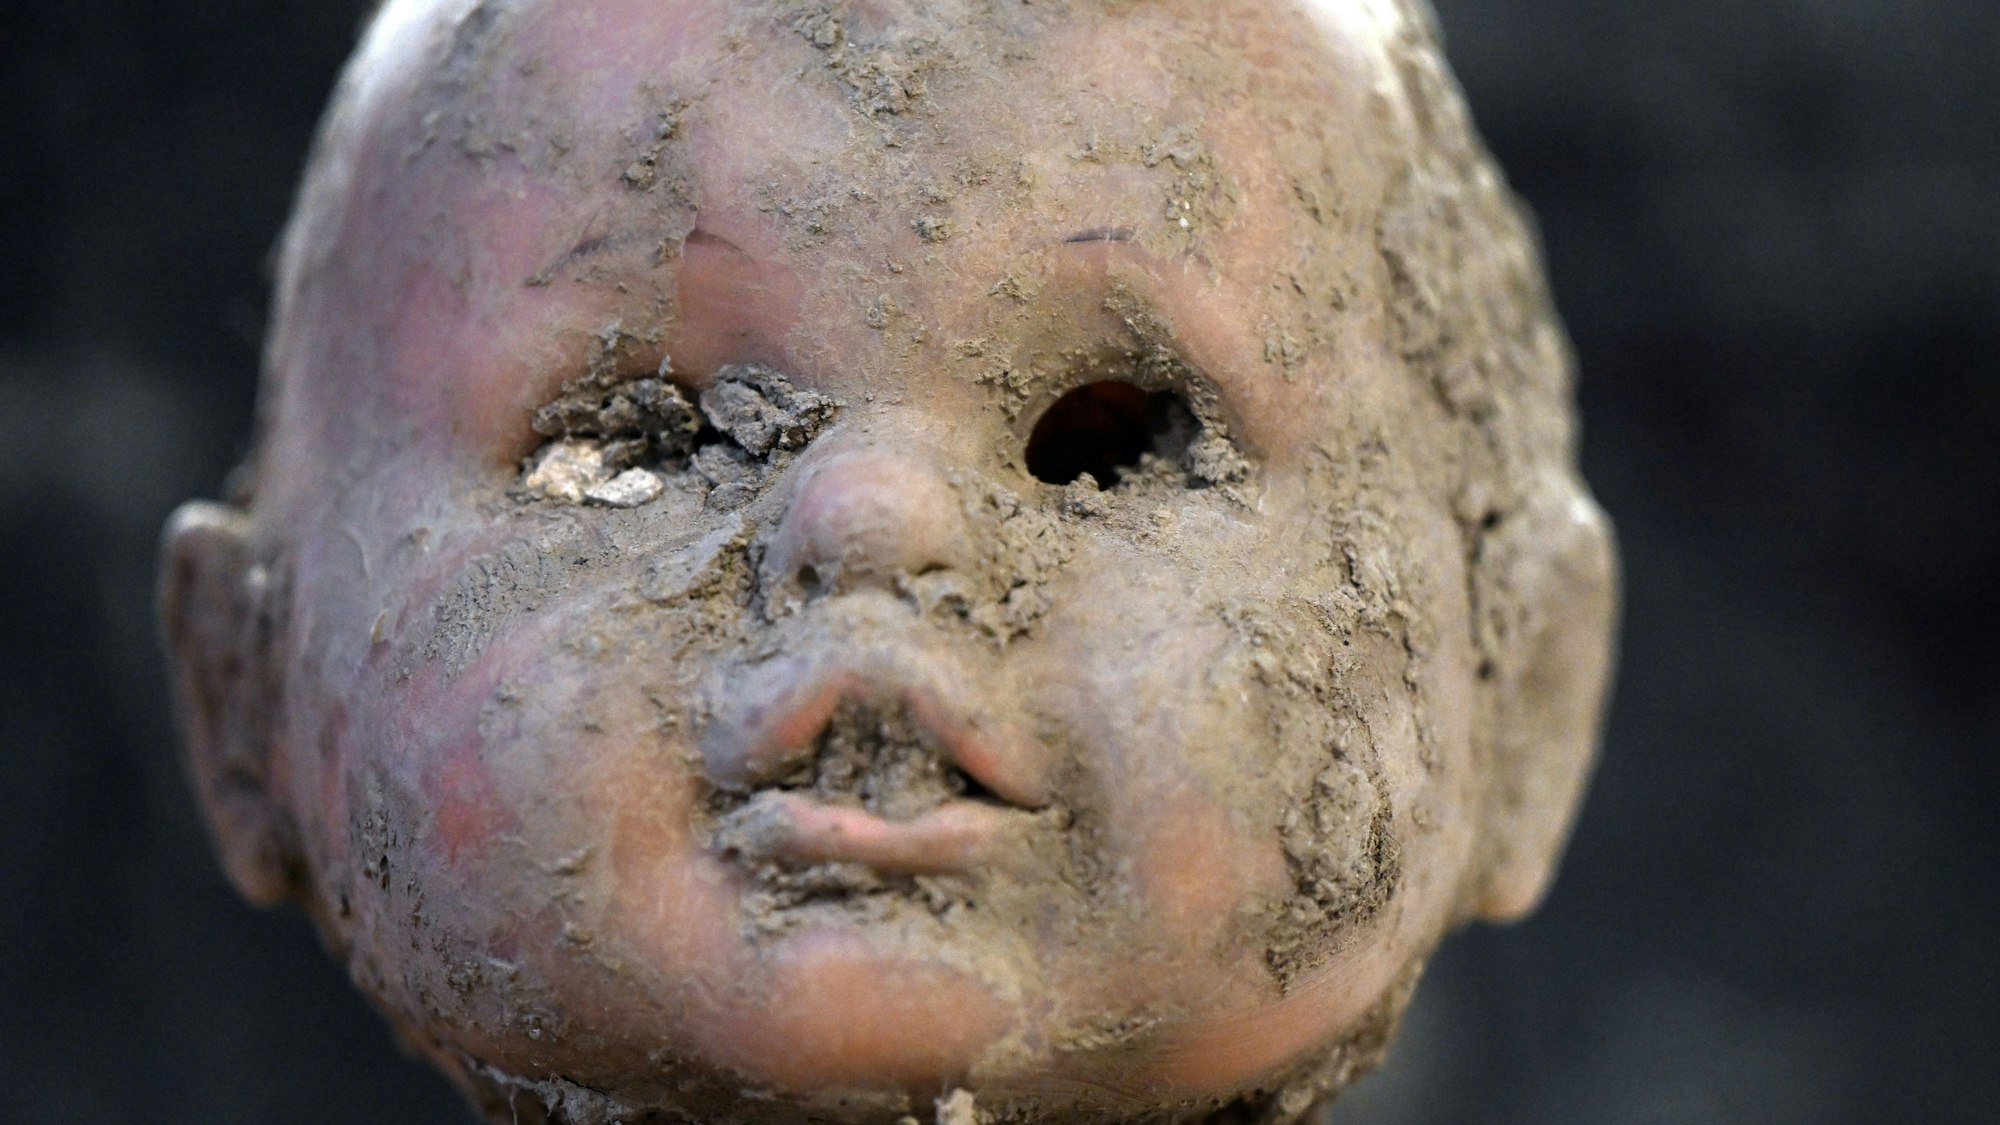 Der Kopf einer Puppe ist verschlammt, im Mund steckt Dreck, die Augen fehlen.